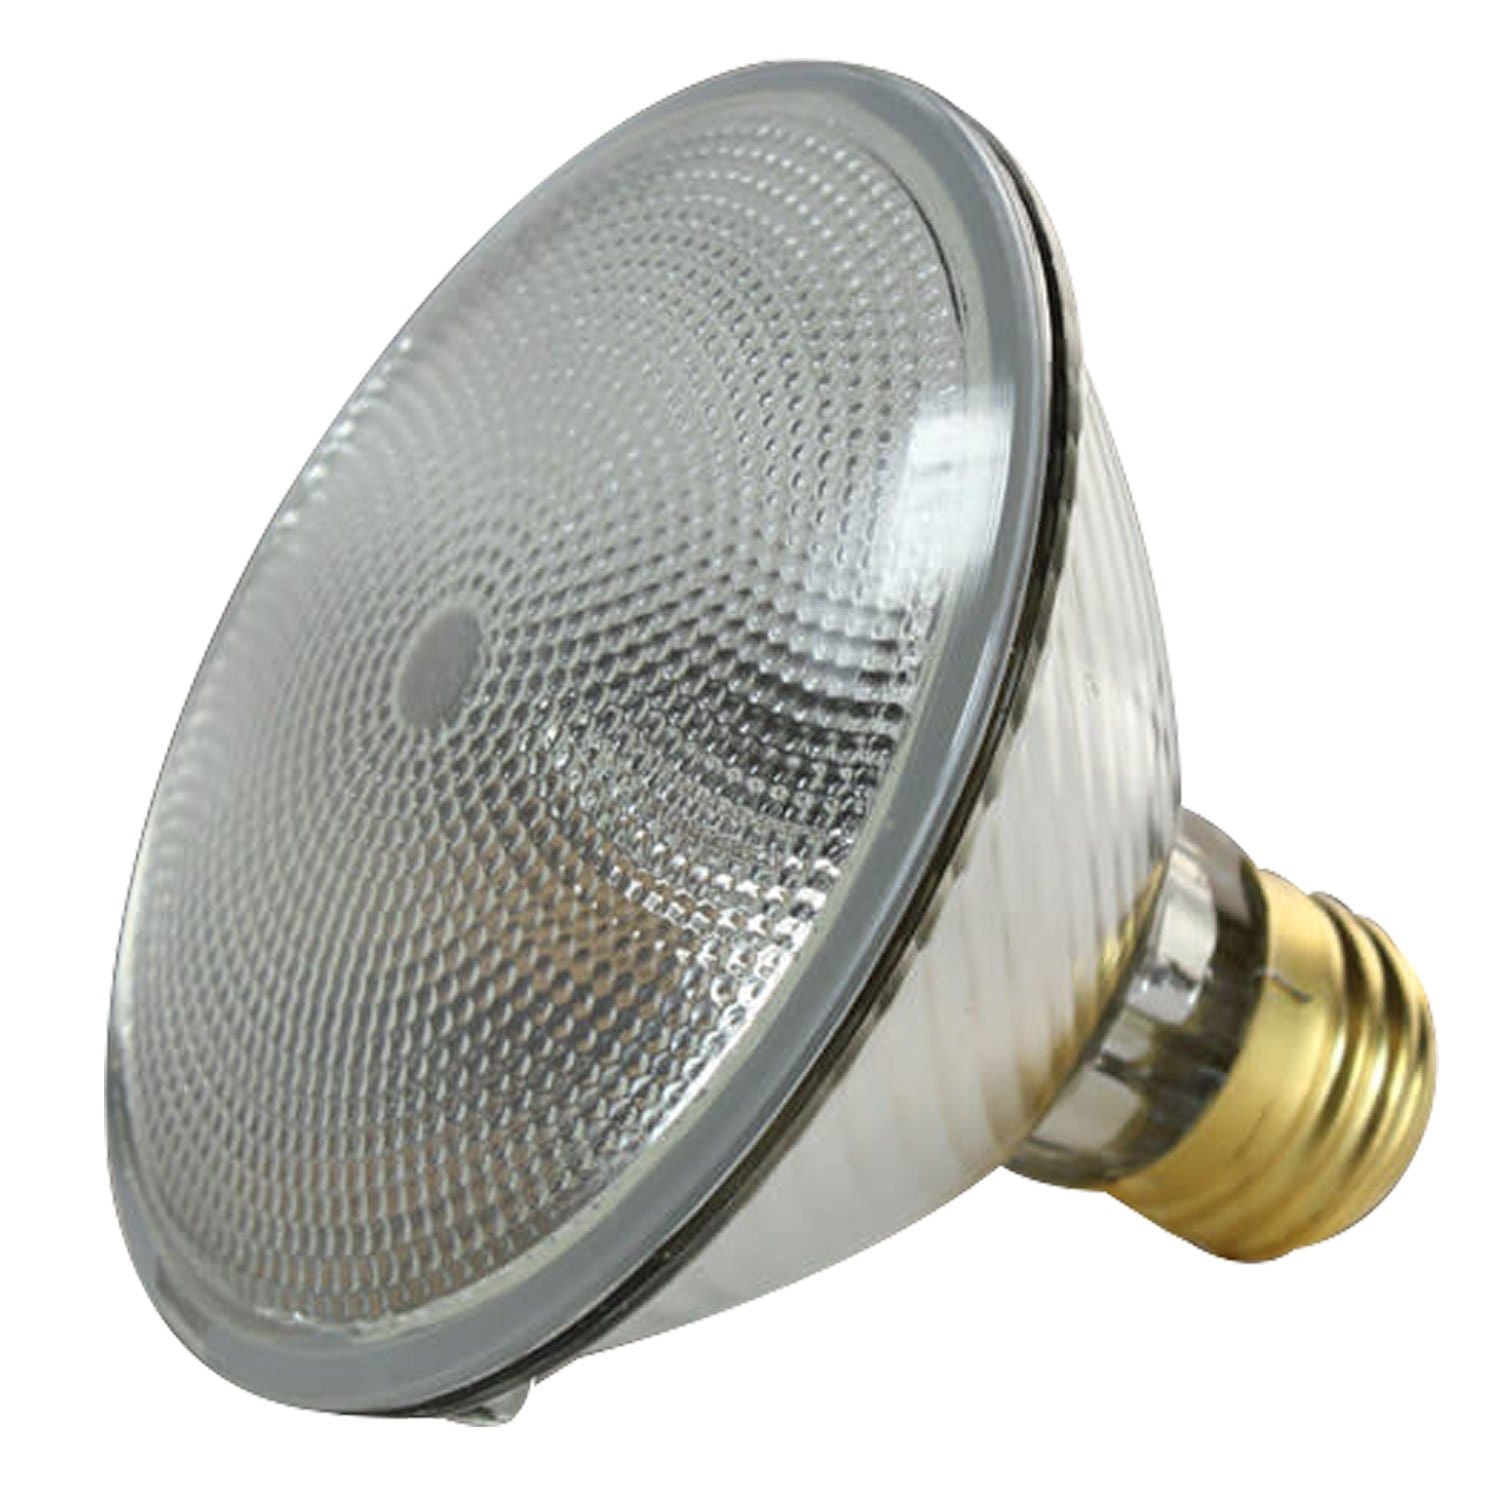 Ushio 38PAR30/FL30/120V 38W Lamp - ProSound and Stage Lighting